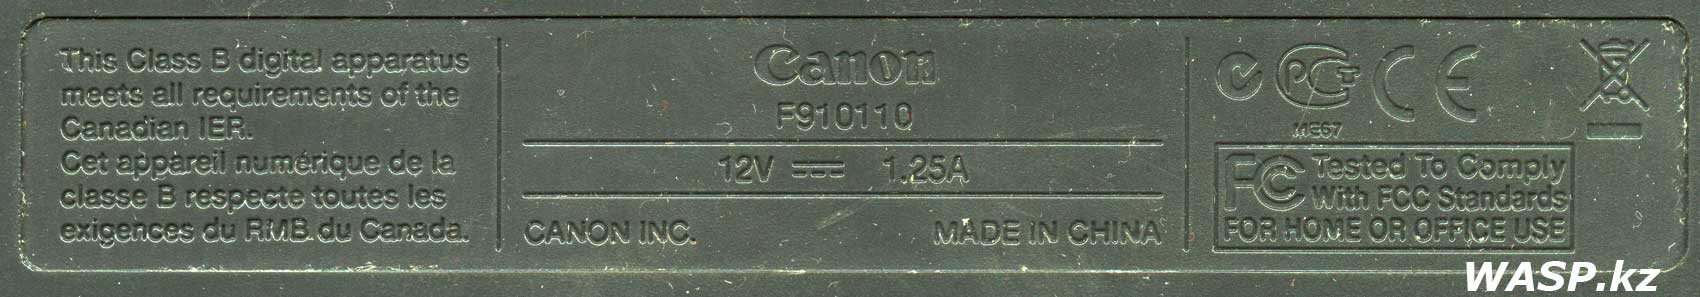 Этикетка сканера F910110 Canon CanoScan 4200F описание и драйвера